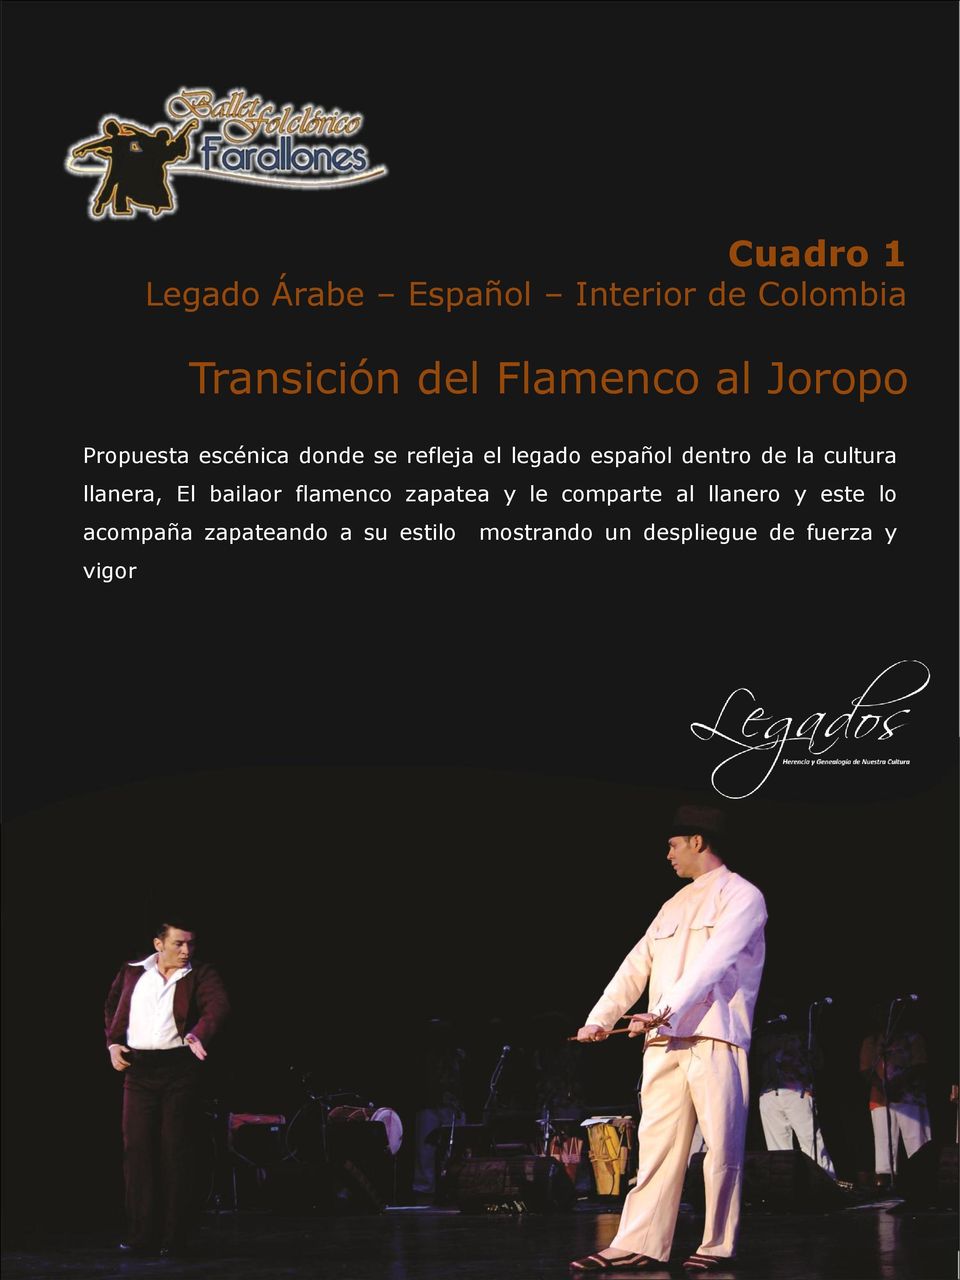 cultura llanera, El bailaor flamenco zapatea y le comparte al llanero y este